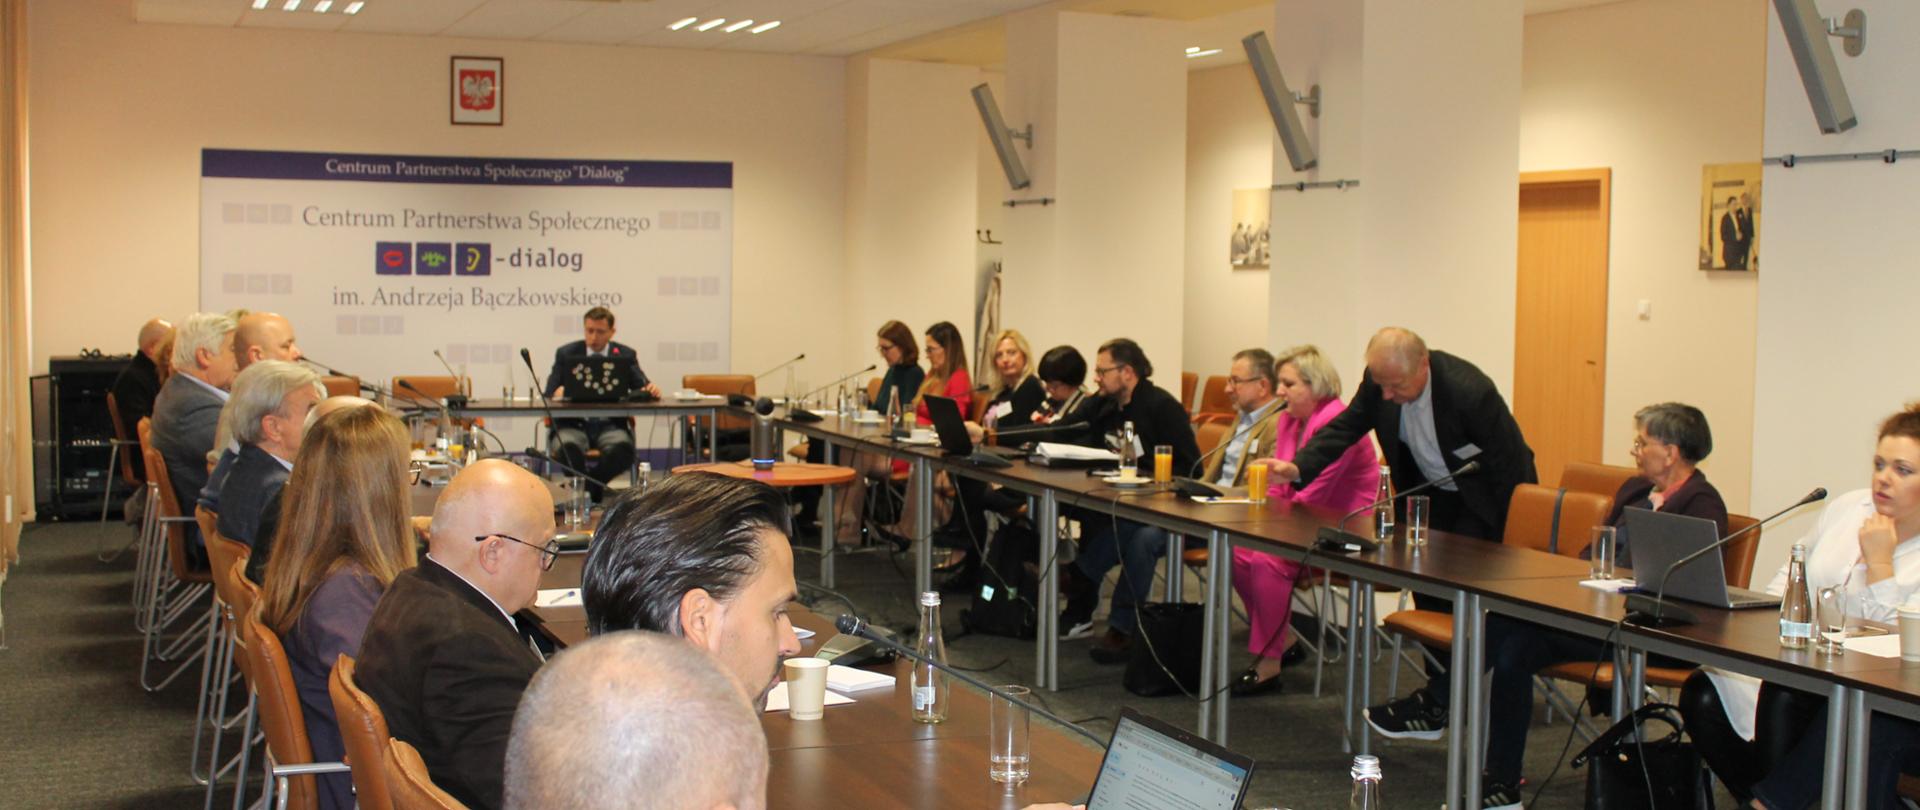 na zdjęciu widać uczestników szkolenia i prelegenta, siedzących w sali CPS Dialog im. A. Bączkowskiego, za prowadzącym widać baner CPS Dialog oraz godło Polski 